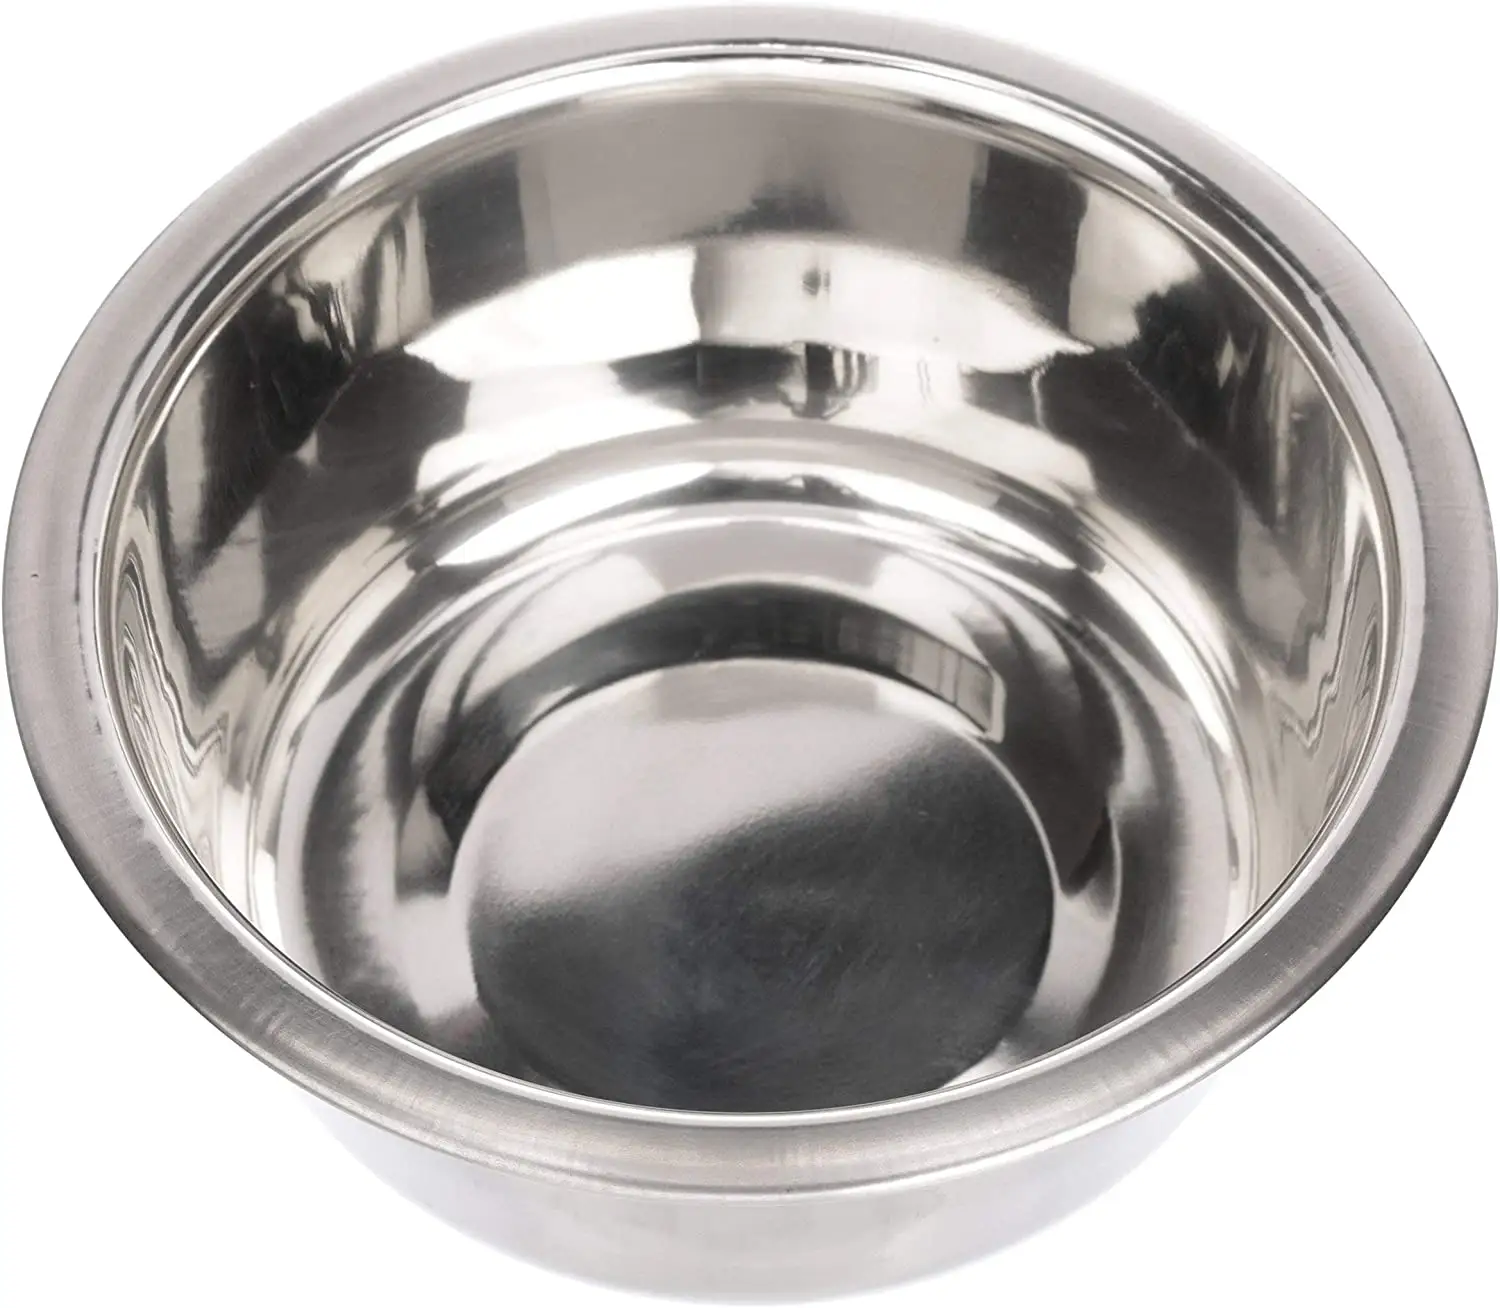 ペットブランドステンレス鋼の犬と猫のボウルフィーダーデラックスまたはエクスプレス追加交換ボウル (金属製の食品と水皿)